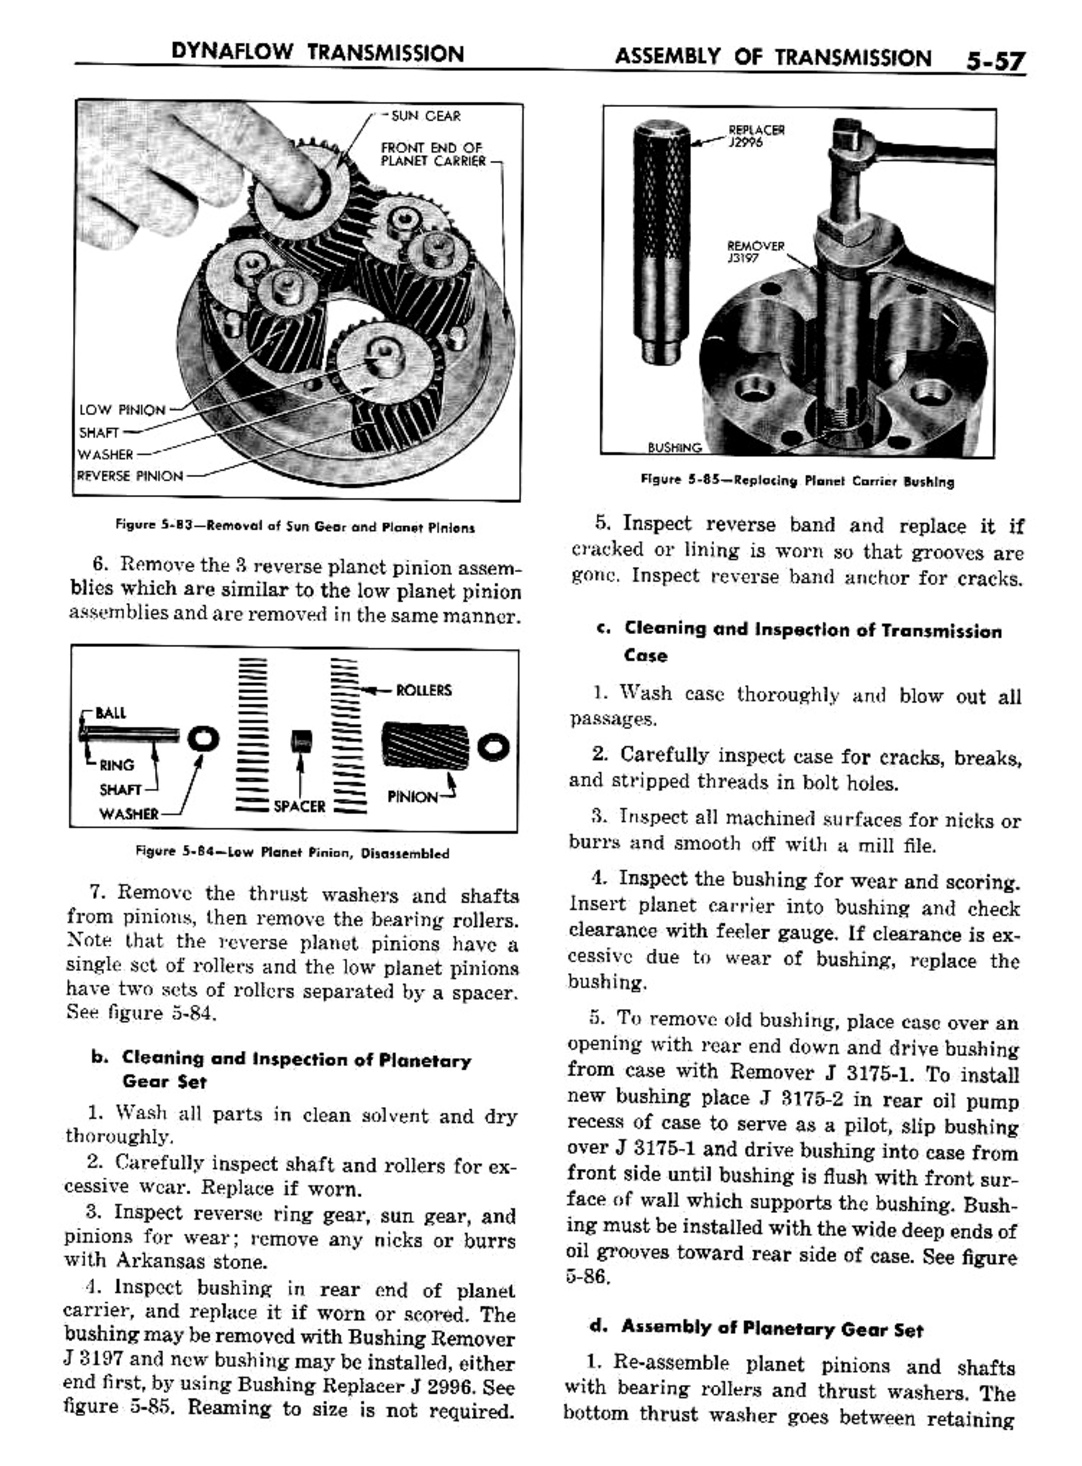 n_06 1957 Buick Shop Manual - Dynaflow-057-057.jpg